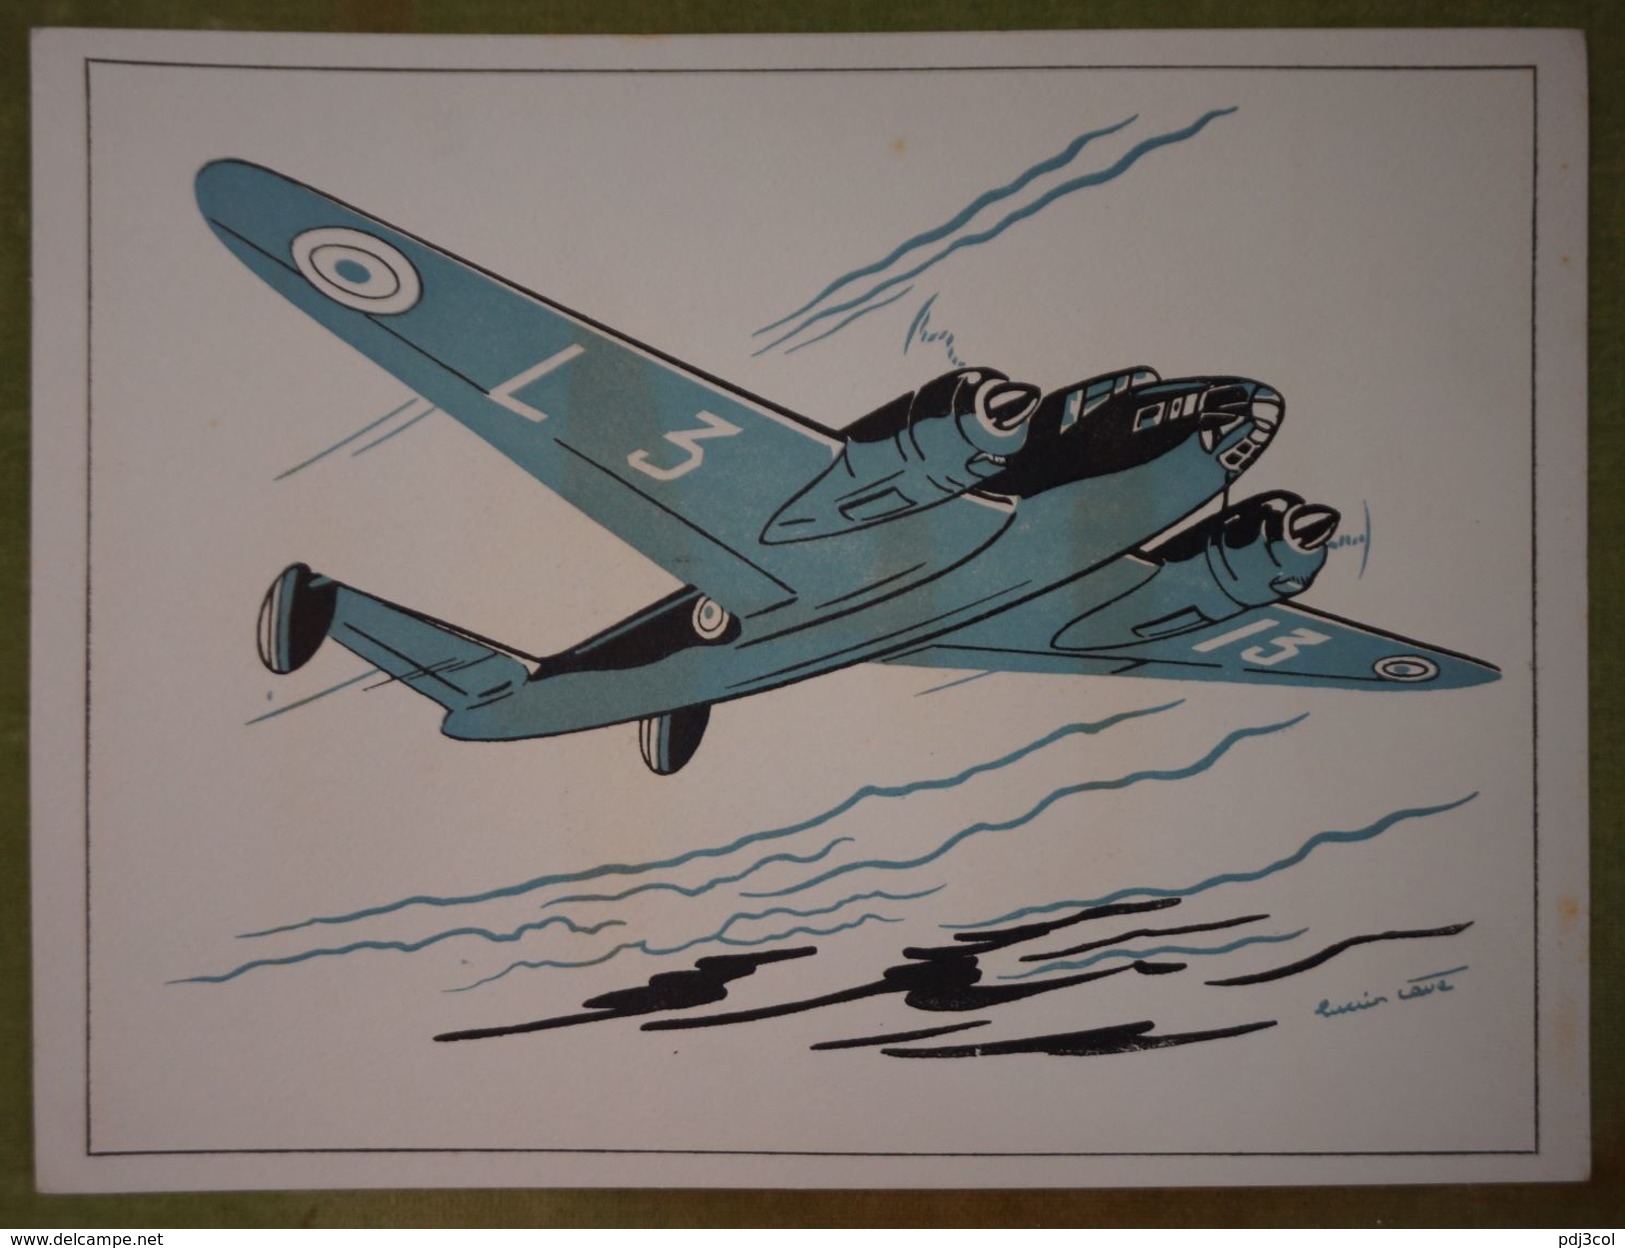 Rare et bel ensemble de 24 planches "Les fiches techniques de l'aviation" illustrées par Lucien CAVE